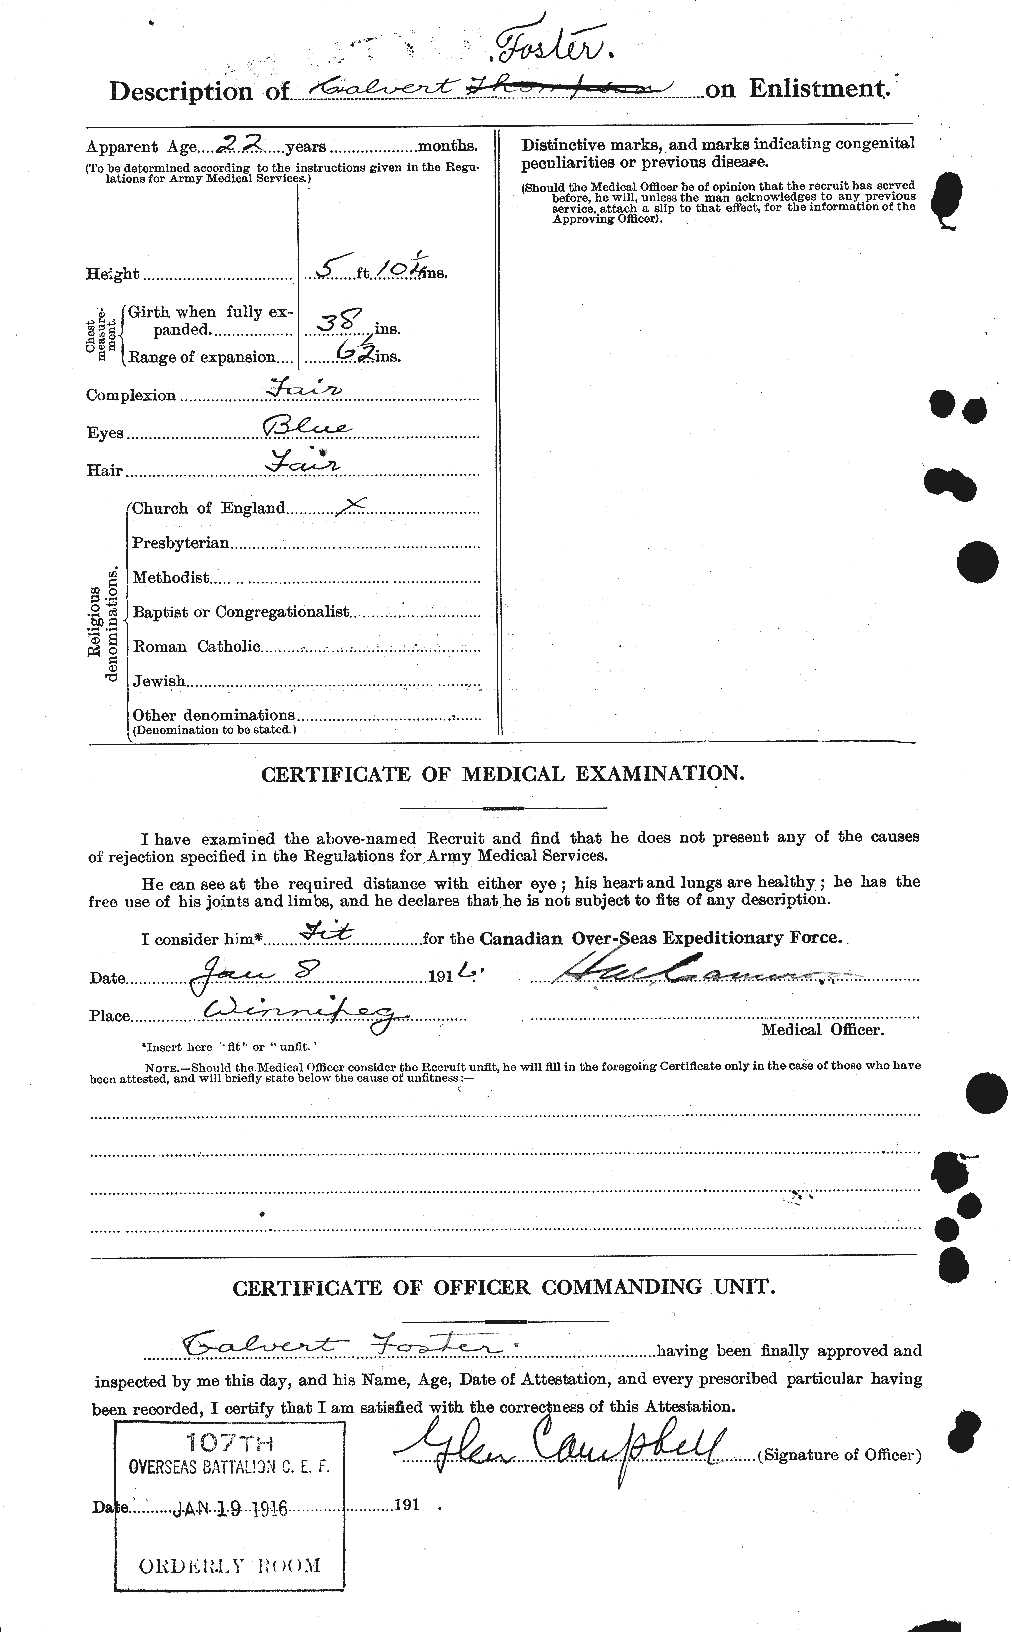 Dossiers du Personnel de la Première Guerre mondiale - CEC 330493b